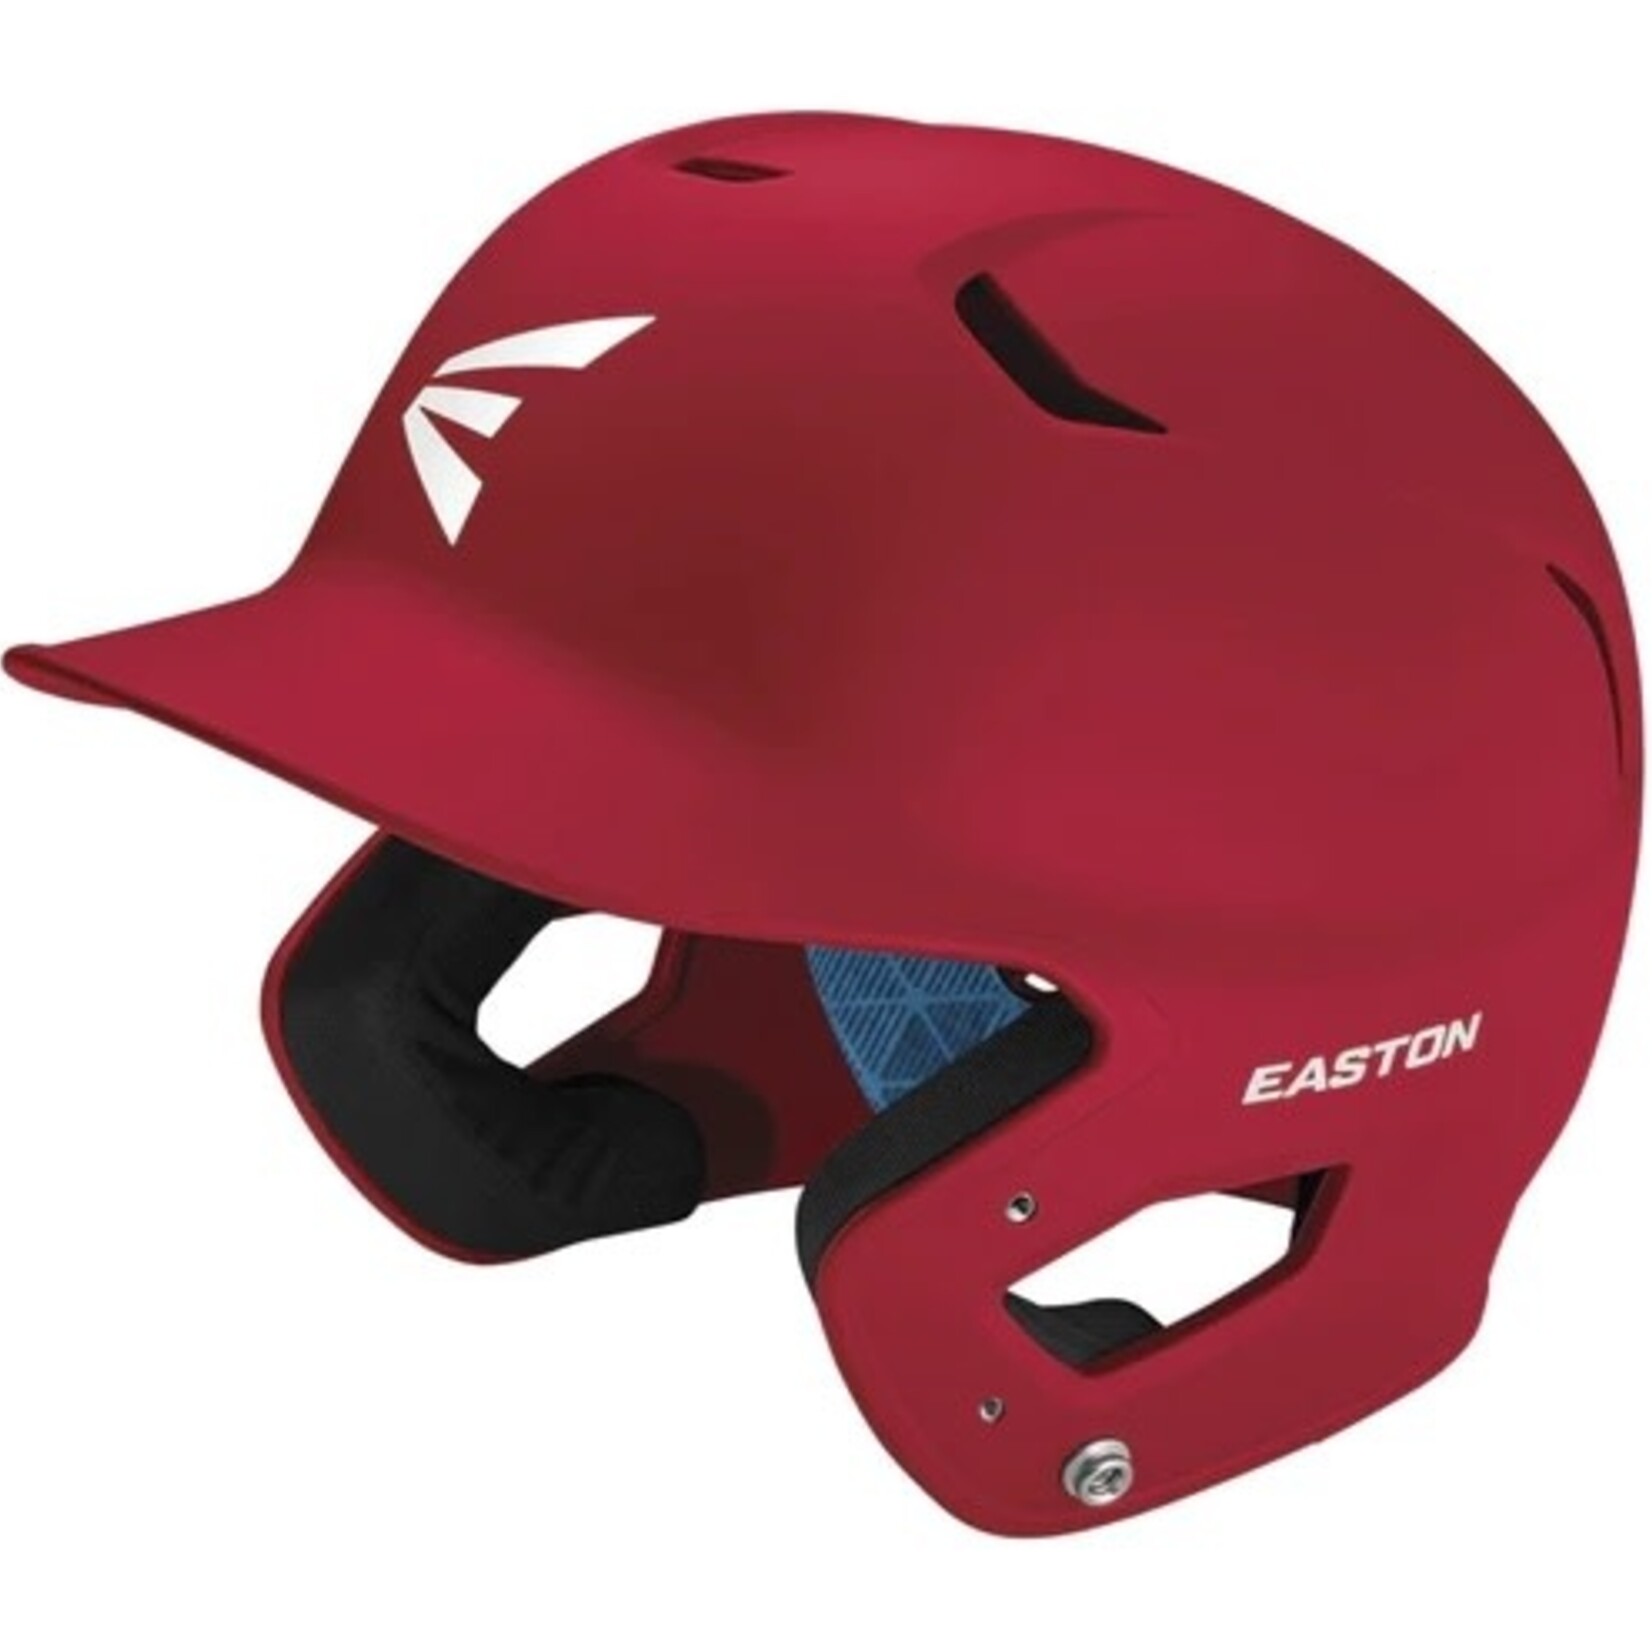 Easton Easton Baseball Batting Helmet, Z5 2.0 Matte Solid, Junior